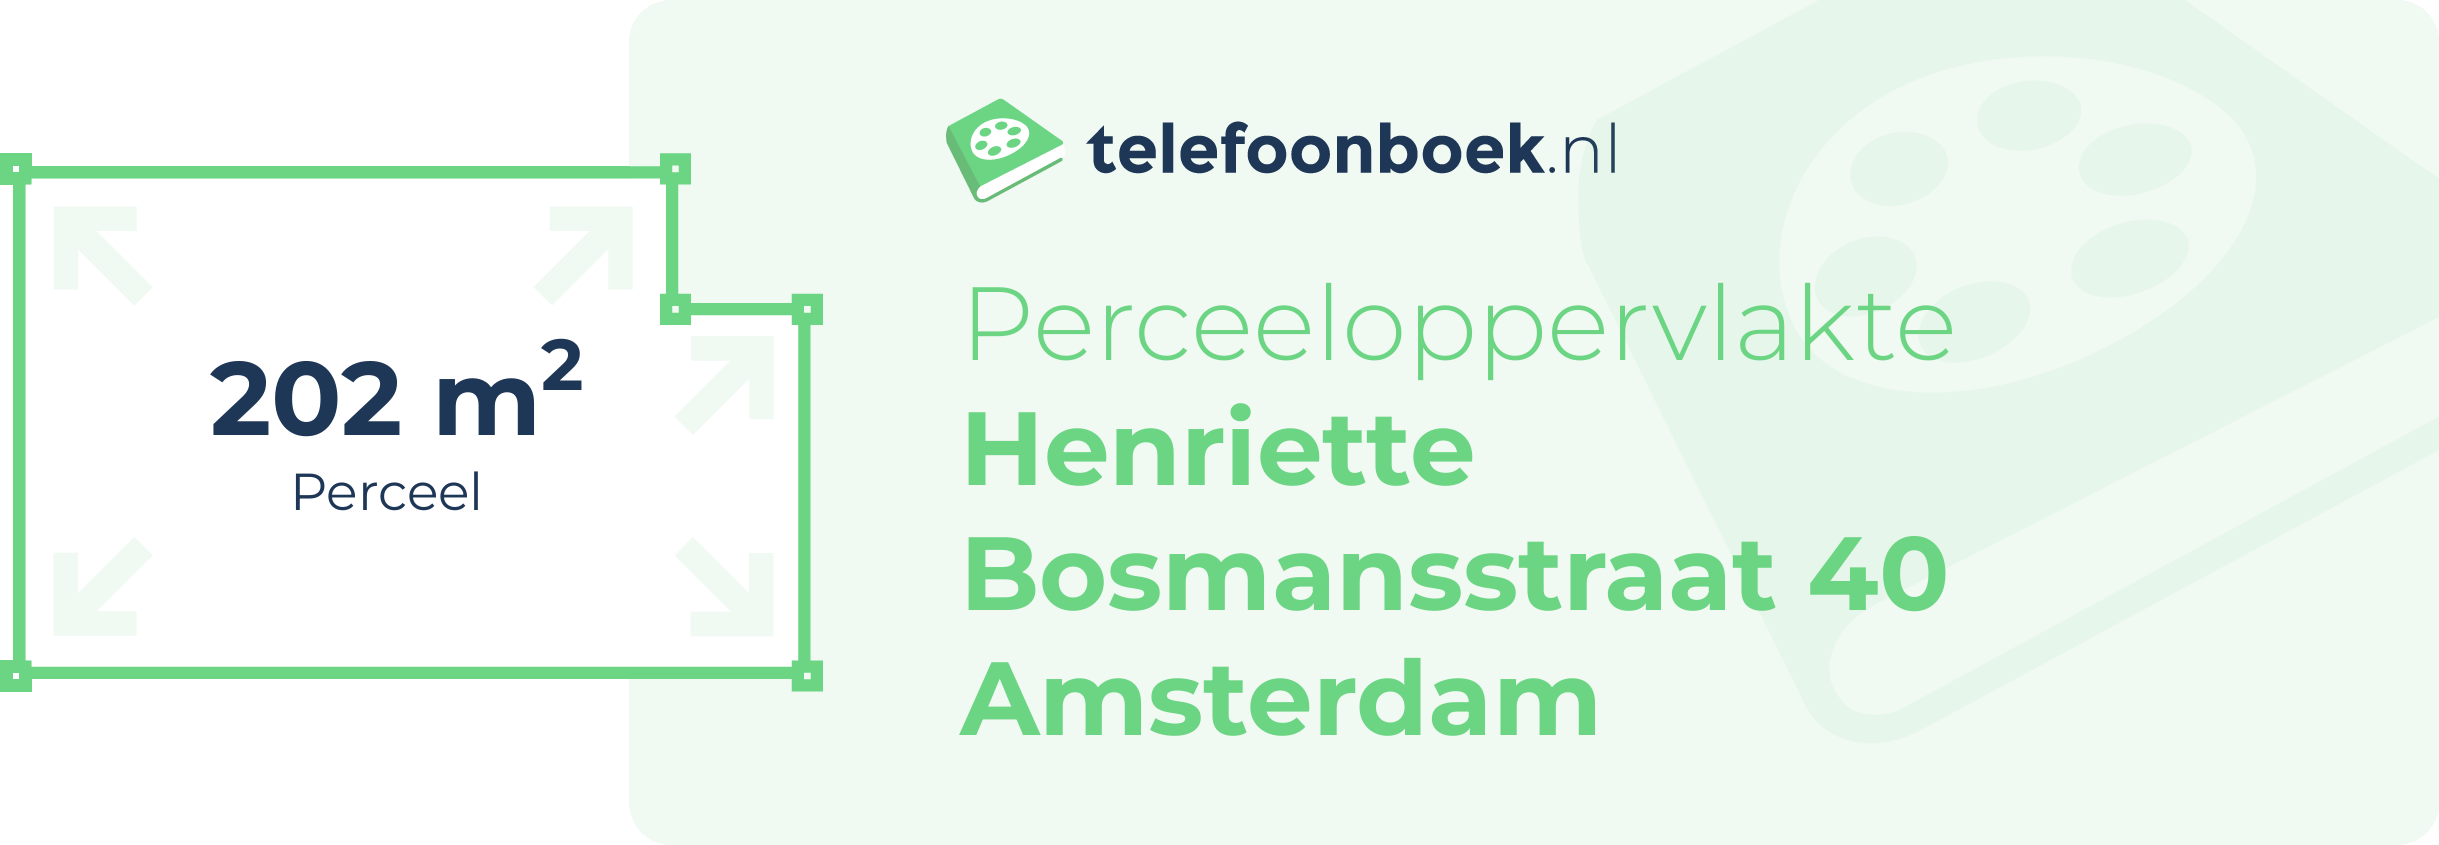 Perceeloppervlakte Henriette Bosmansstraat 40 Amsterdam